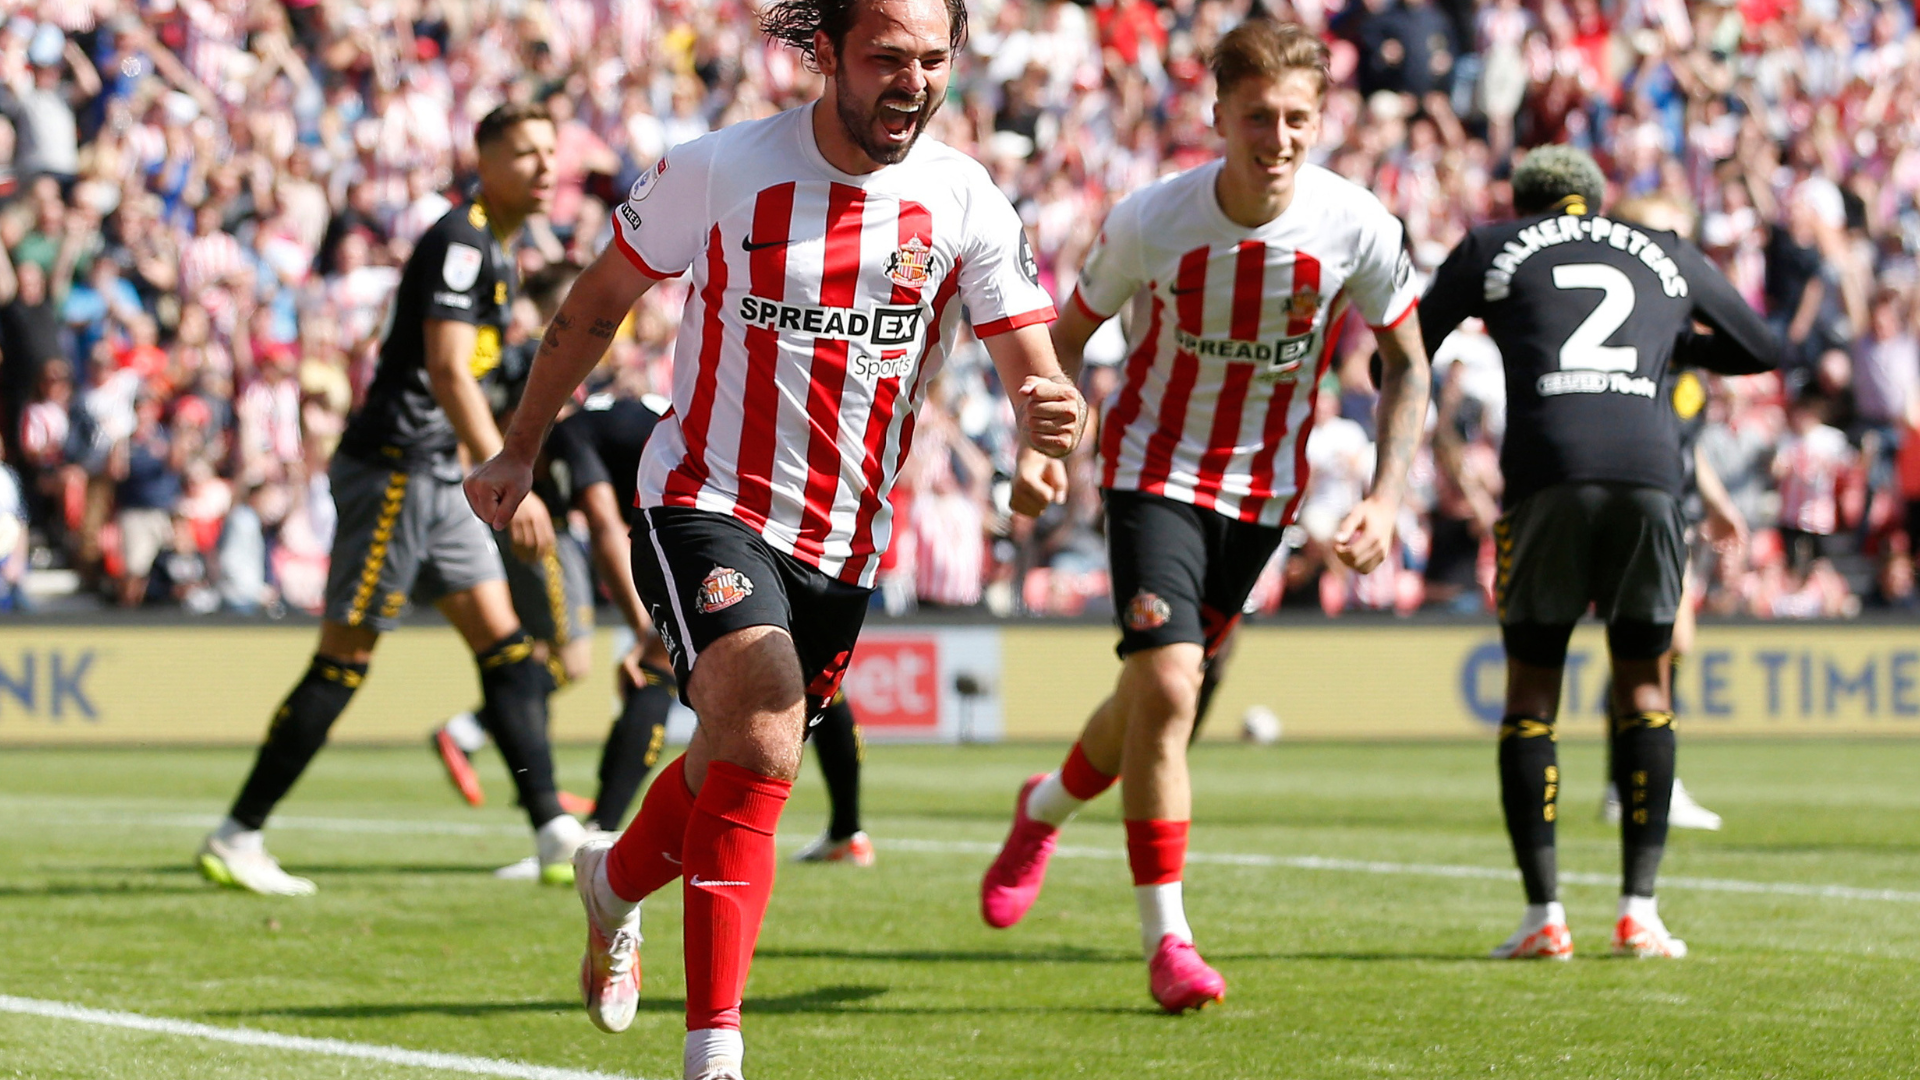 Sunderland midfielder Bradley Back celebrating a goal